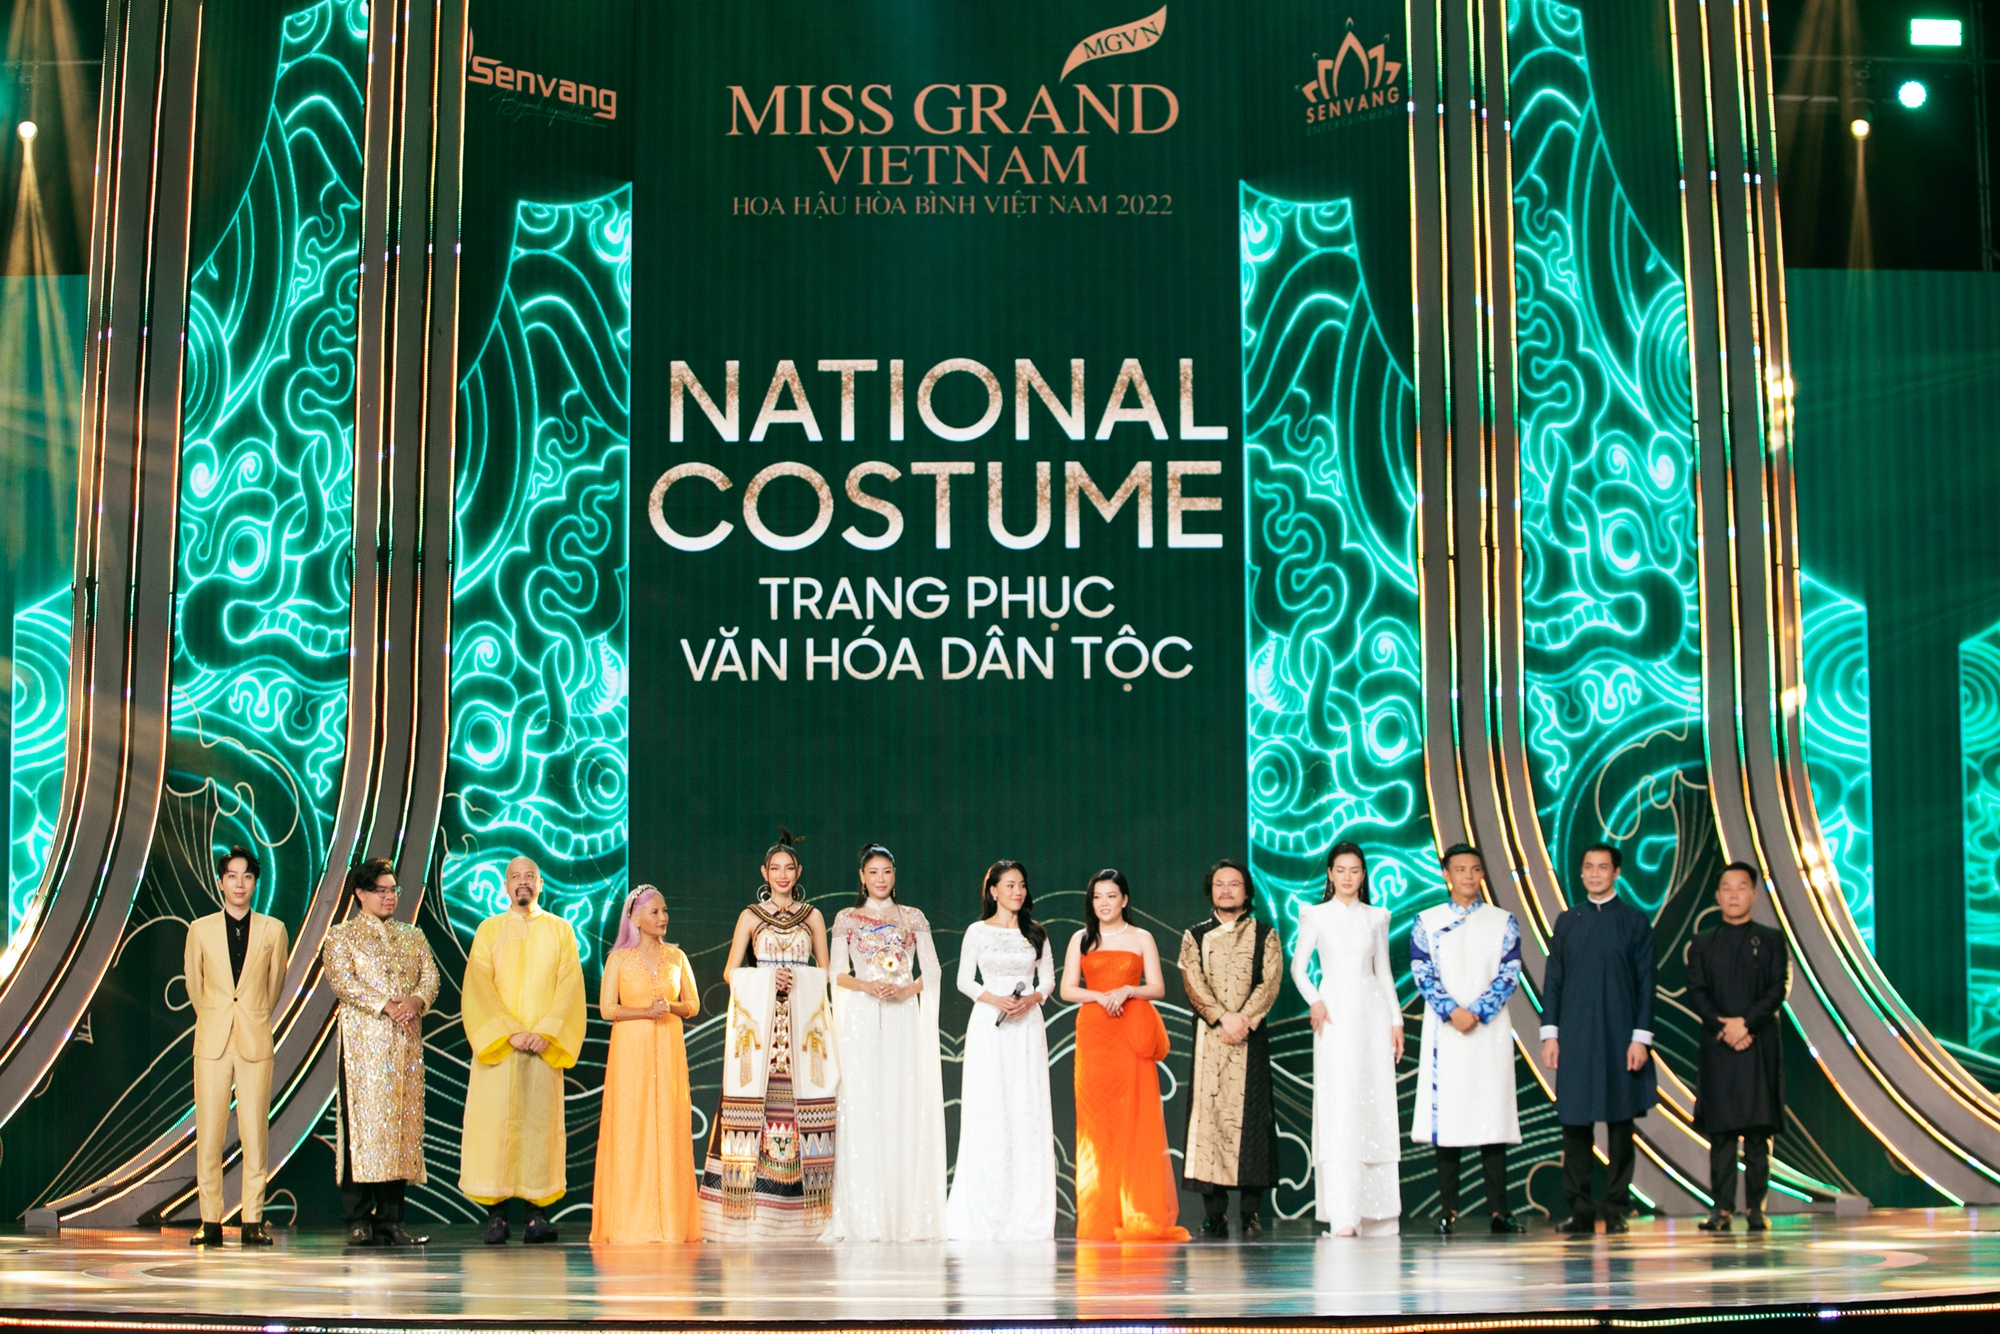 Toàn cảnh đêm thi trang phục dân tộc Hoa hậu Hòa bình Việt Nam: Thùy Tiên và dàn sao đổ bộ, hàng loạt thiết kế cực độc đáo - Ảnh 11.